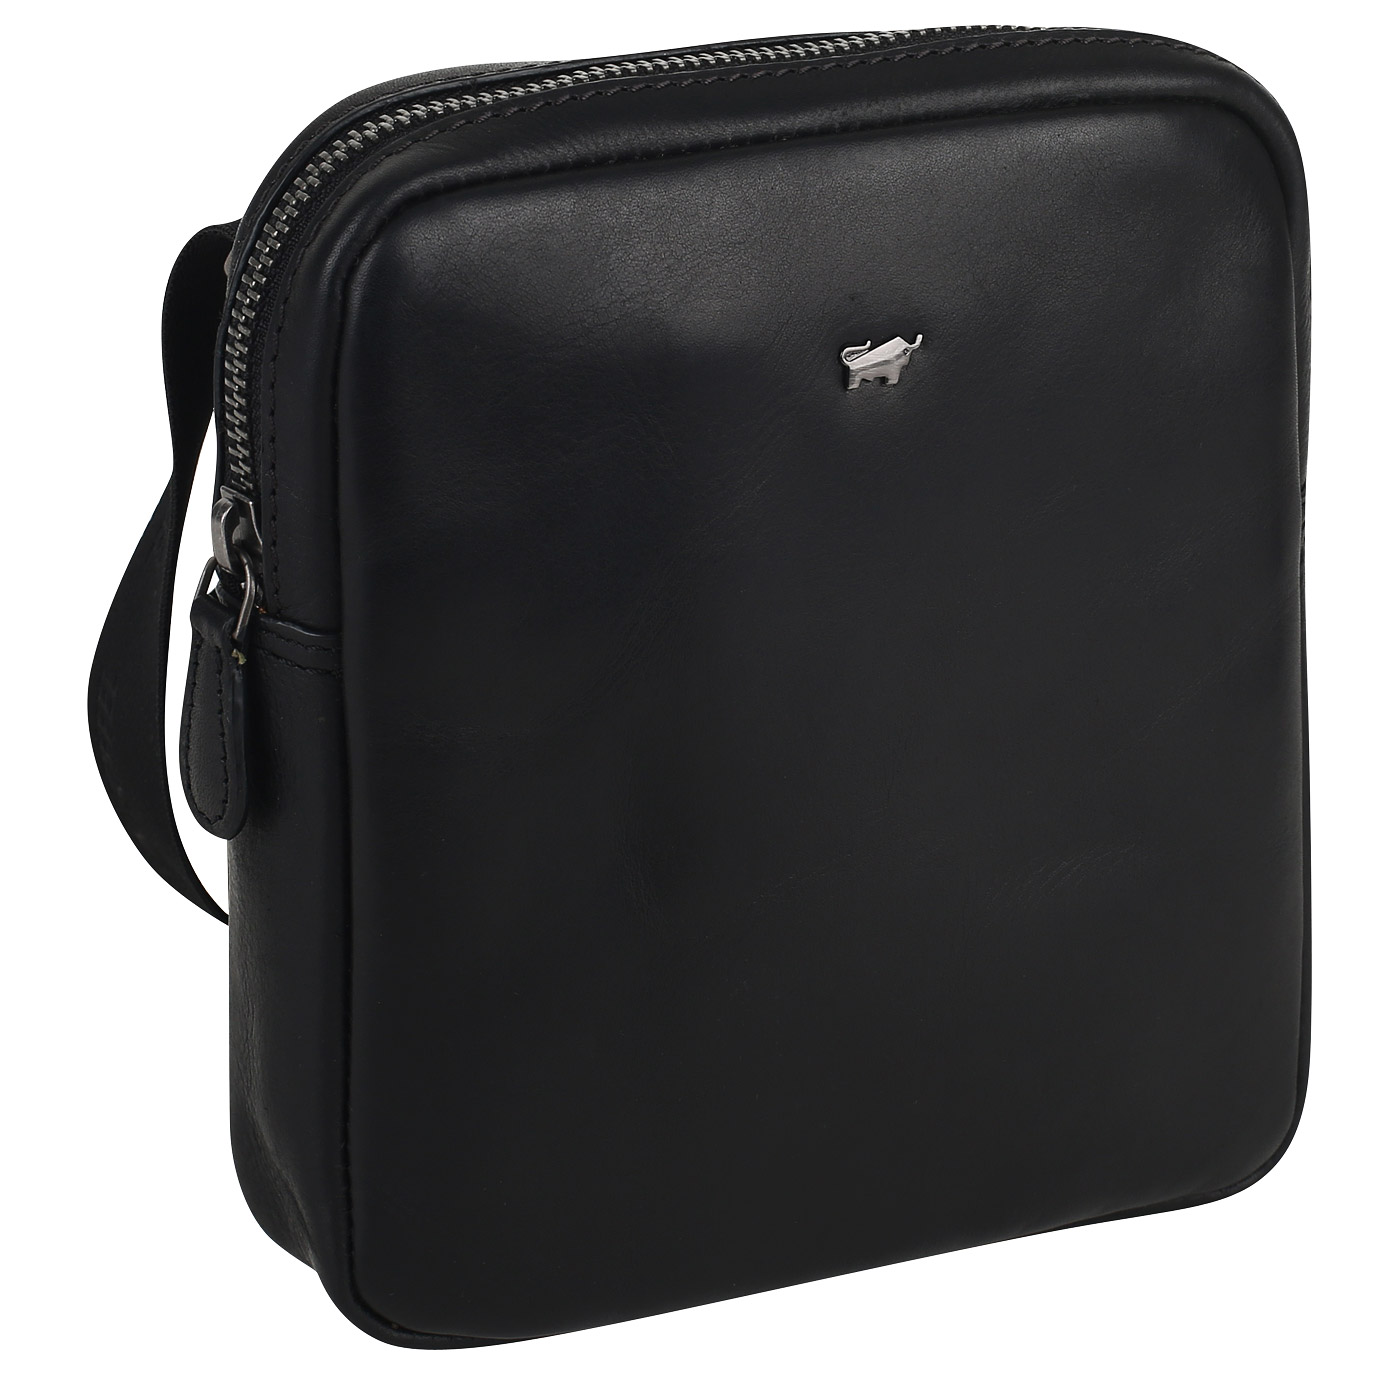 Кожаная сумка-планшет Braun Buffel Parma